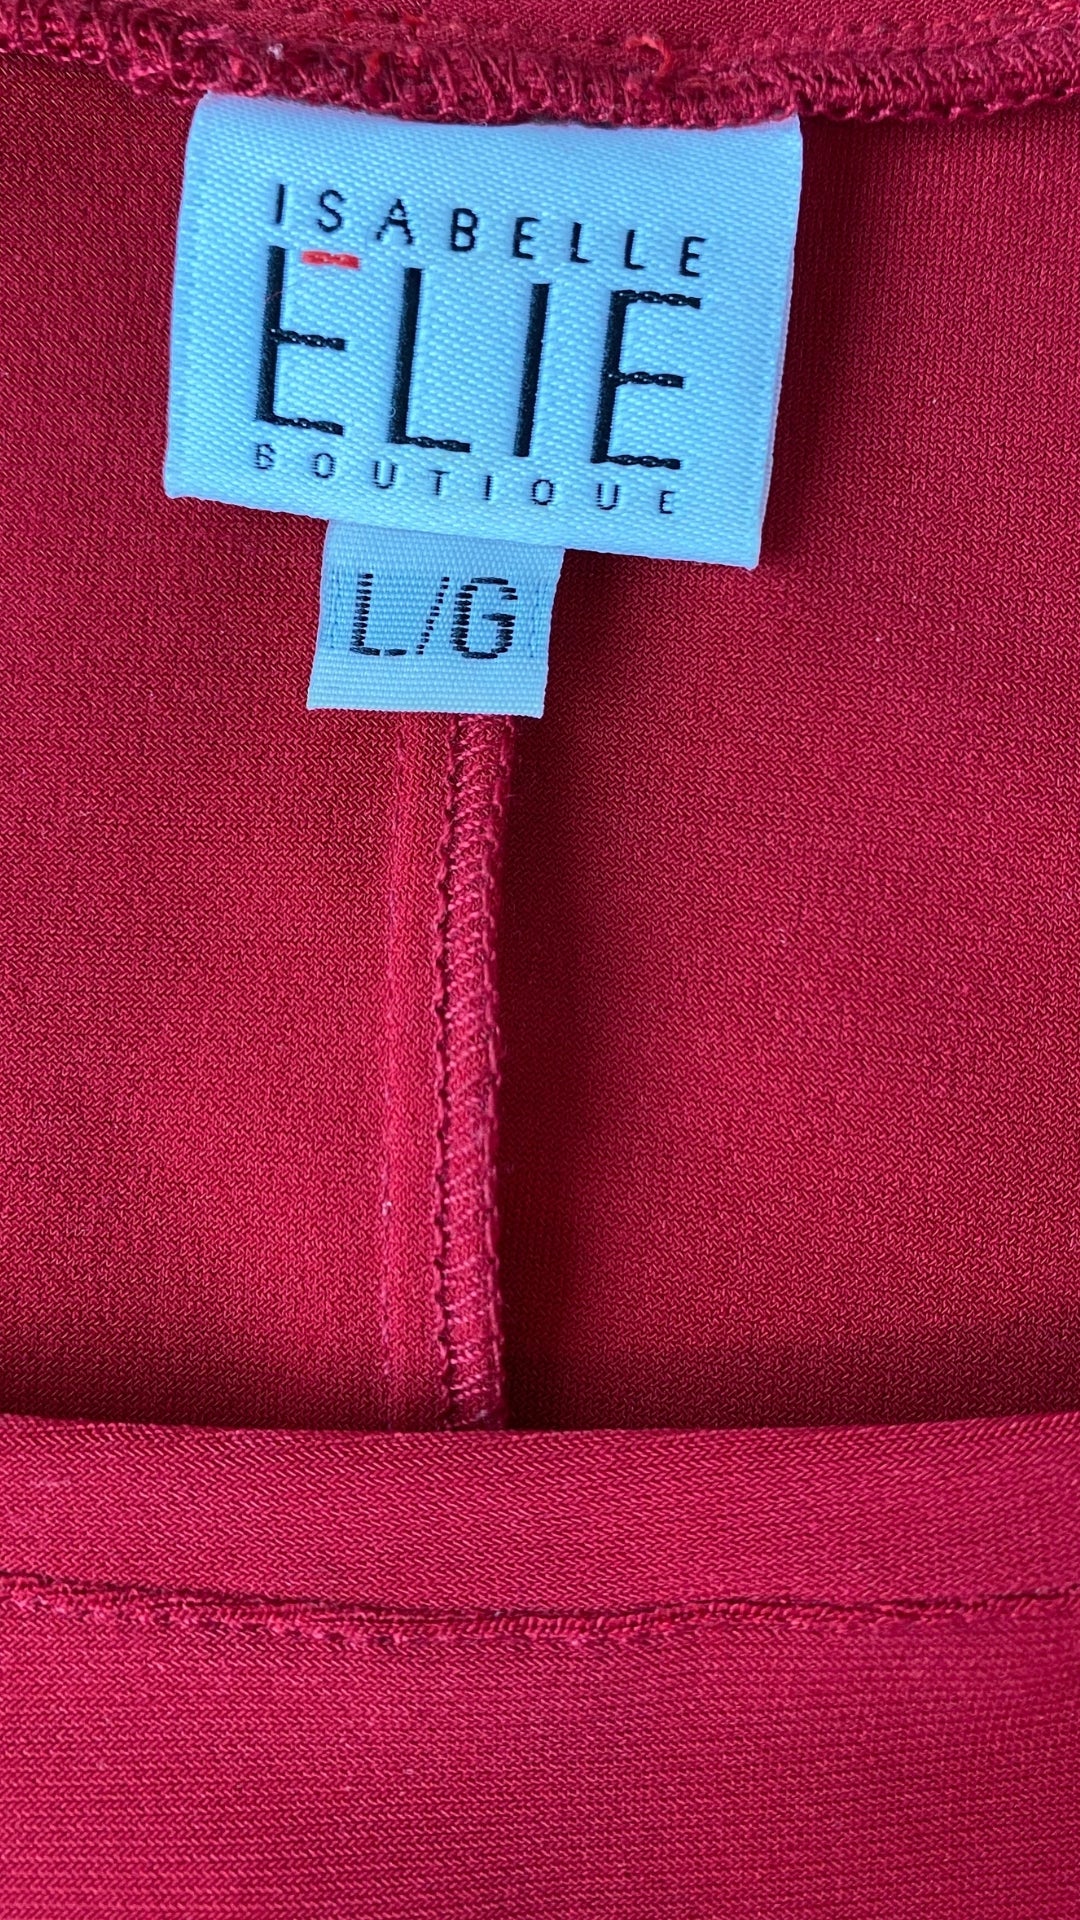 Robe cintrée rouge Isabelle Elie, taille large (m/l). Vue de l'étiquette de marque et taille.